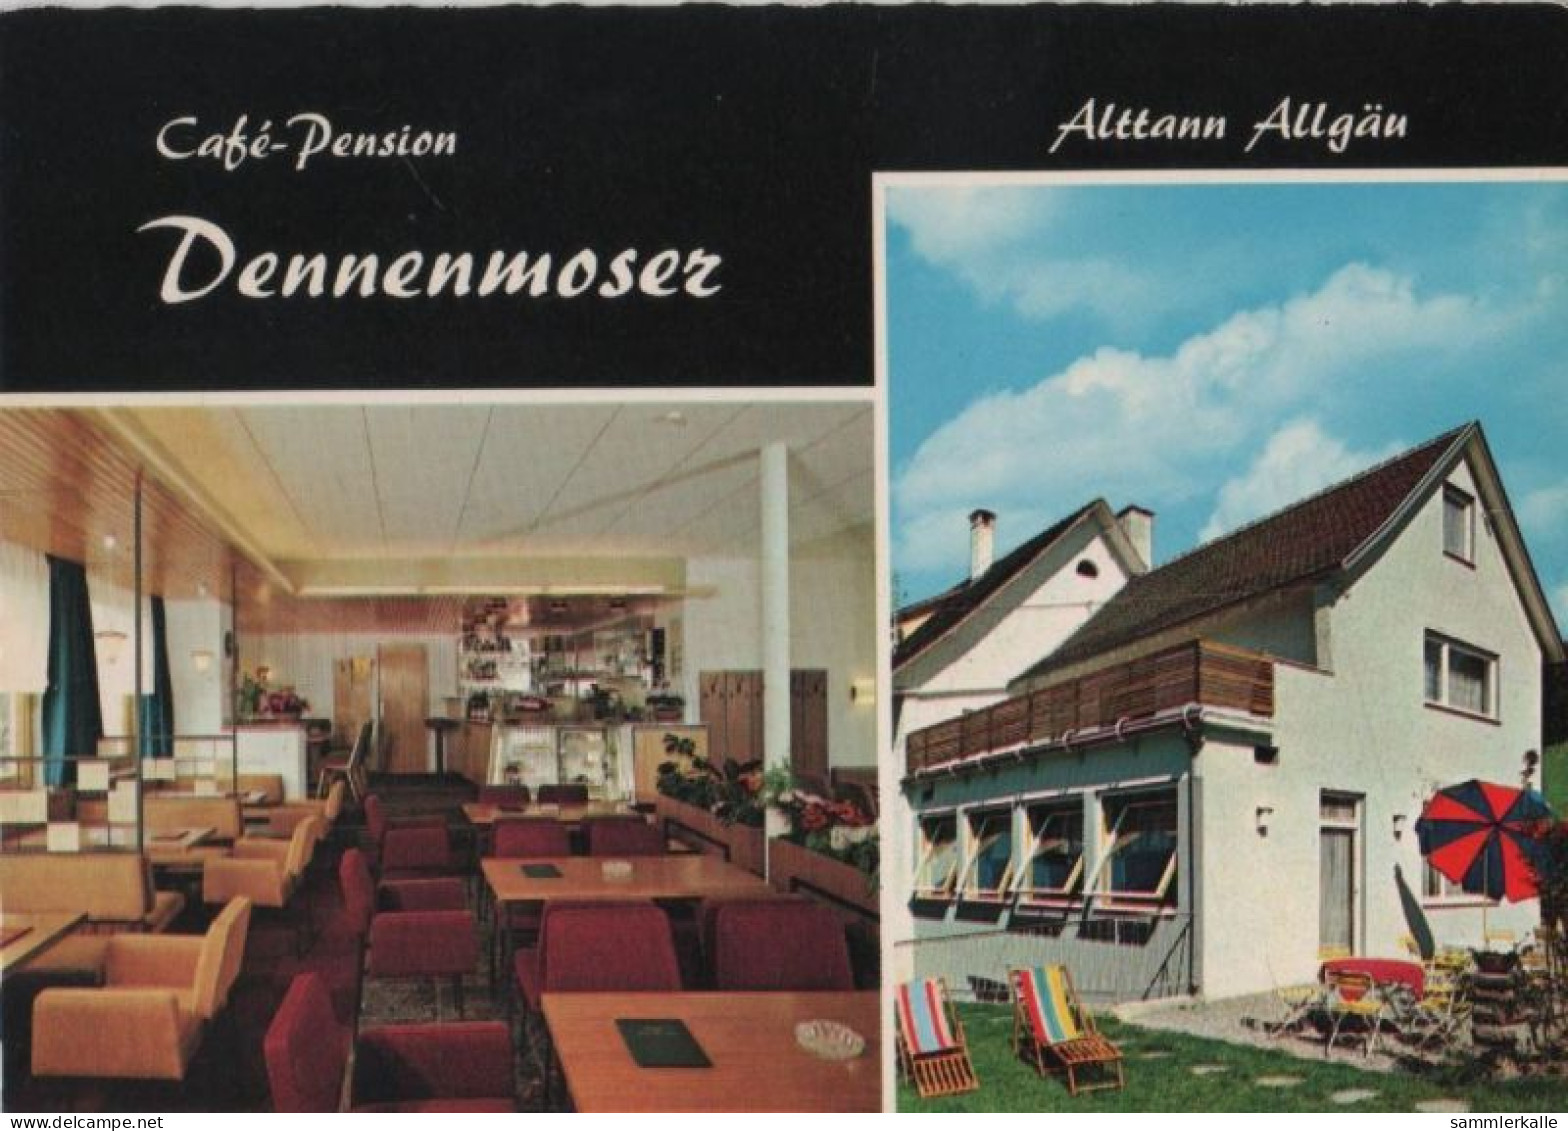 97741 - Wolfegg-Alttann - Cafe-Pension Dennenmoser - 1964 - Ravensburg